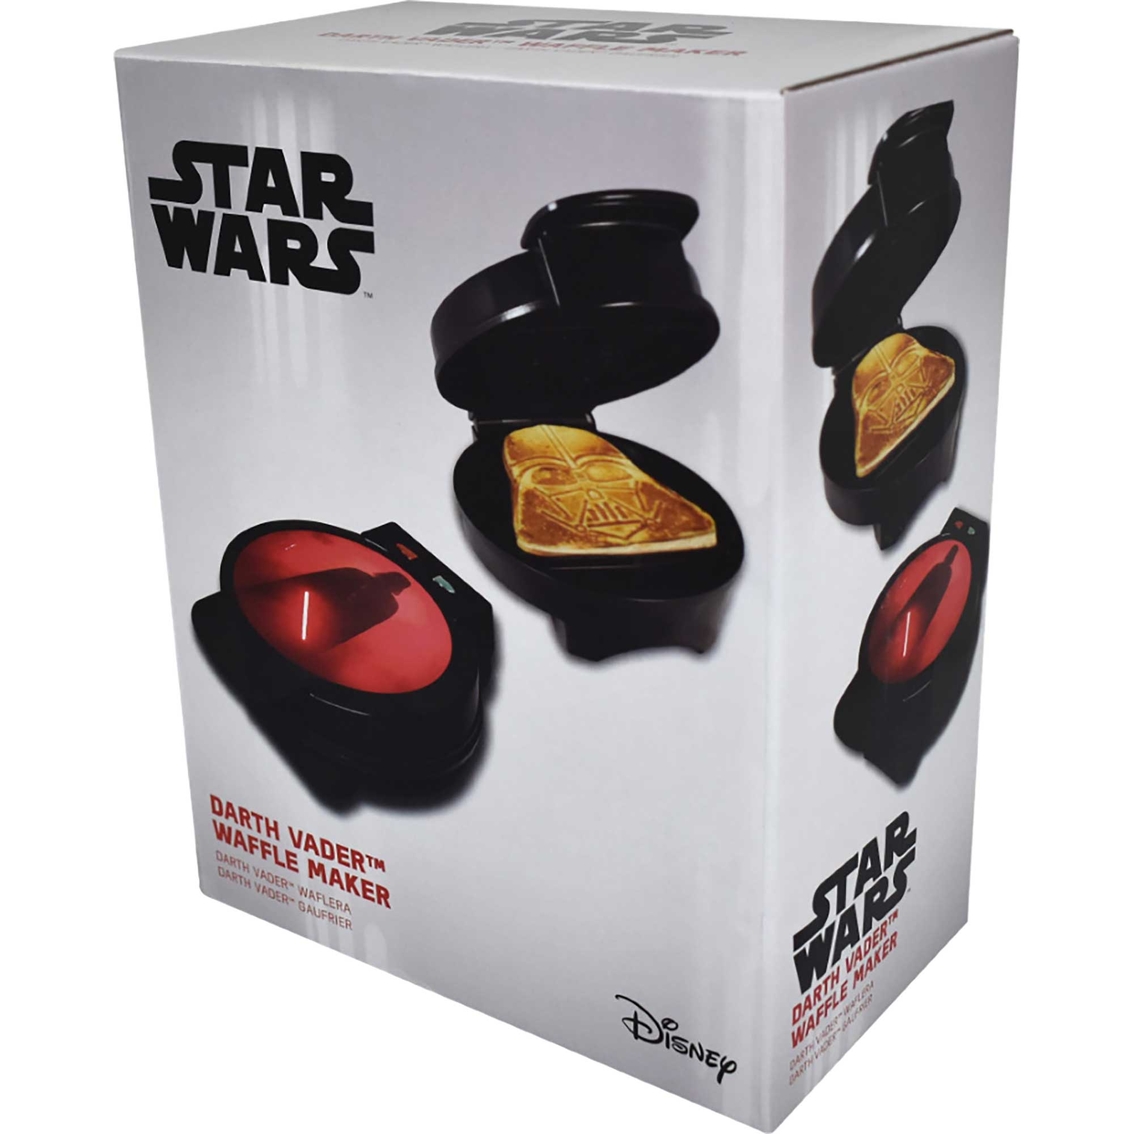 Uncanny Brands Star Wars Darth Vader Waffle Maker - Image 4 of 6